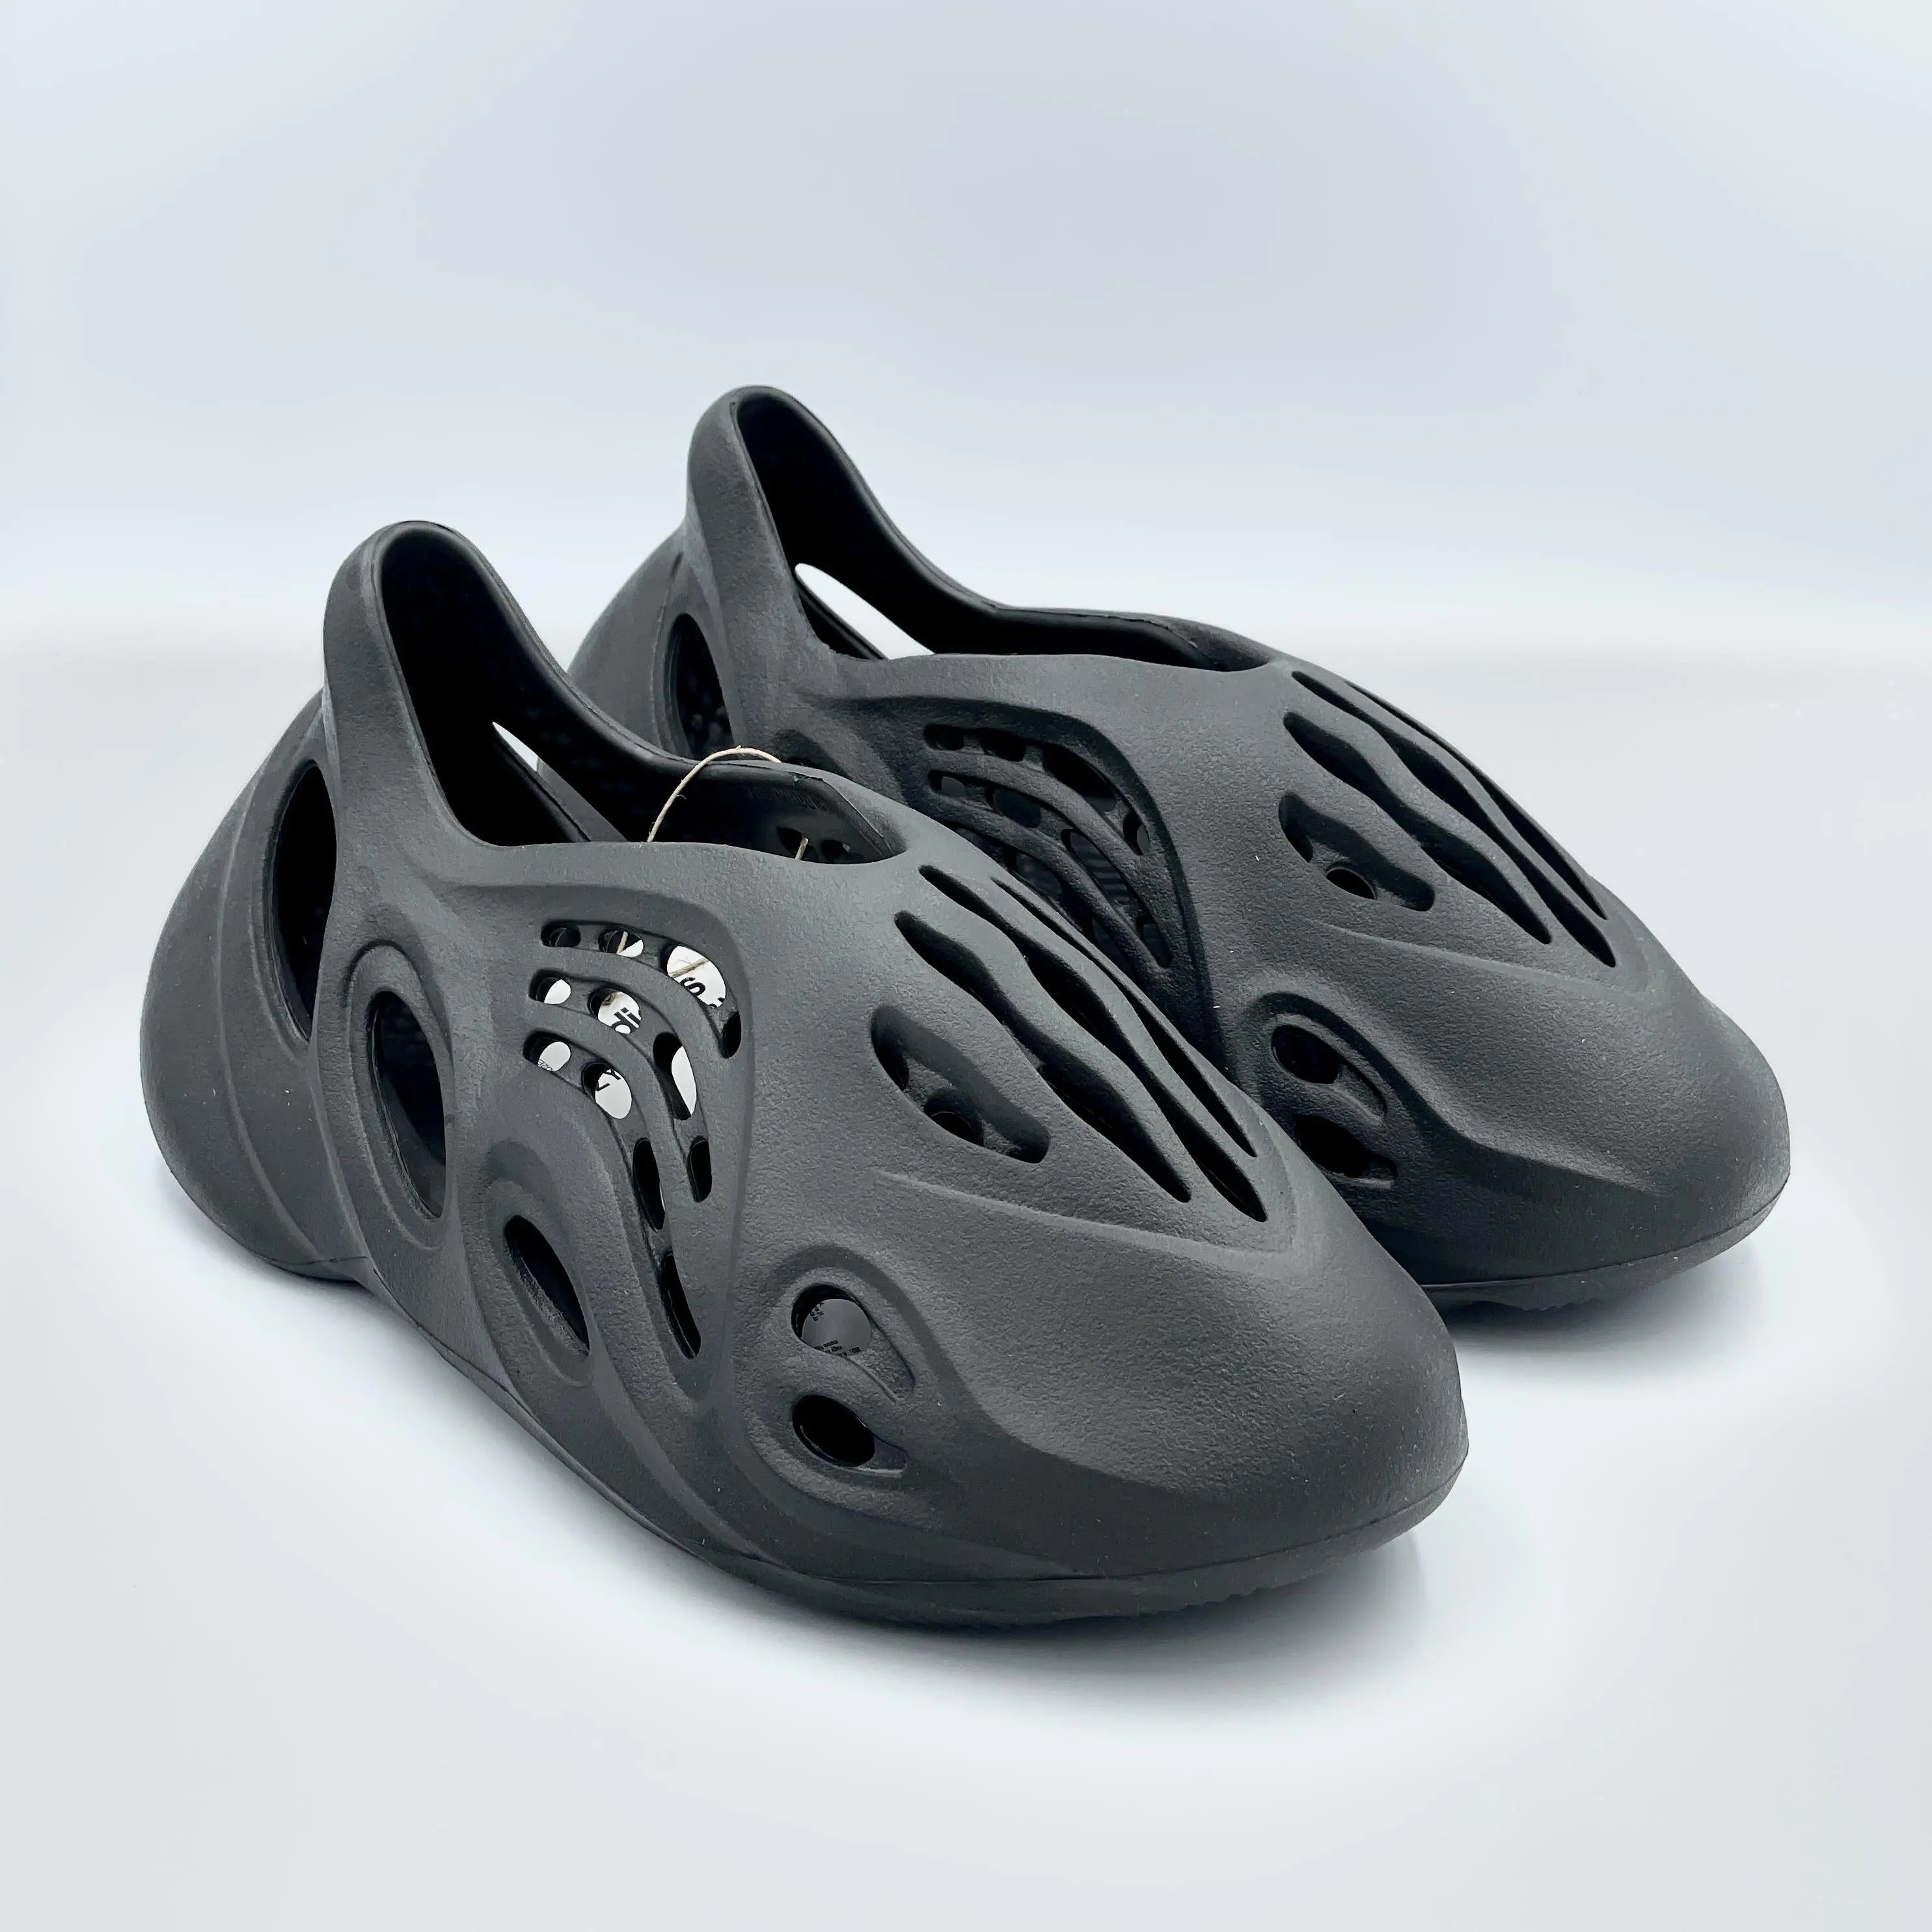 Adidas Yeezy Foam Runner Onyx - SA Sneakers